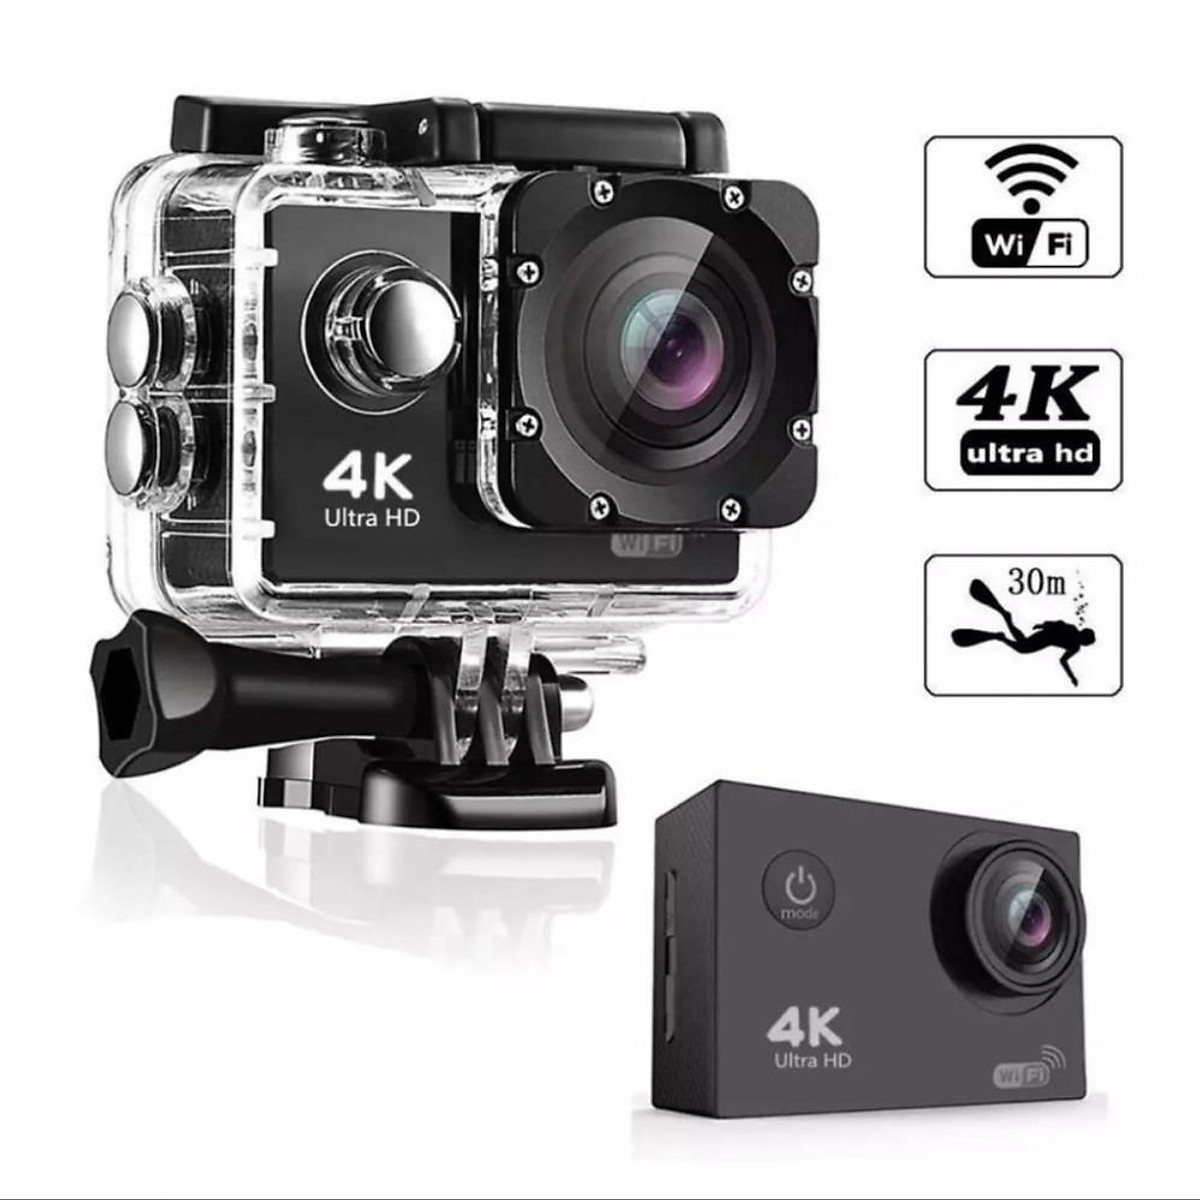 Máy ảnh 4K Ultra HD: Bạn đang tìm kiếm một chiếc máy ảnh đầy đủ tính năng chuyên nghiệp với độ phân giải 4K tuyệt đẹp? Máy ảnh 4K Ultra HD sẽ là sự lựa chọn hoàn hảo cho bạn. Hãy truy cập ngay ảnh liên quan để xem thêm về sức mạnh và tính năng nổi bật của máy ảnh này.